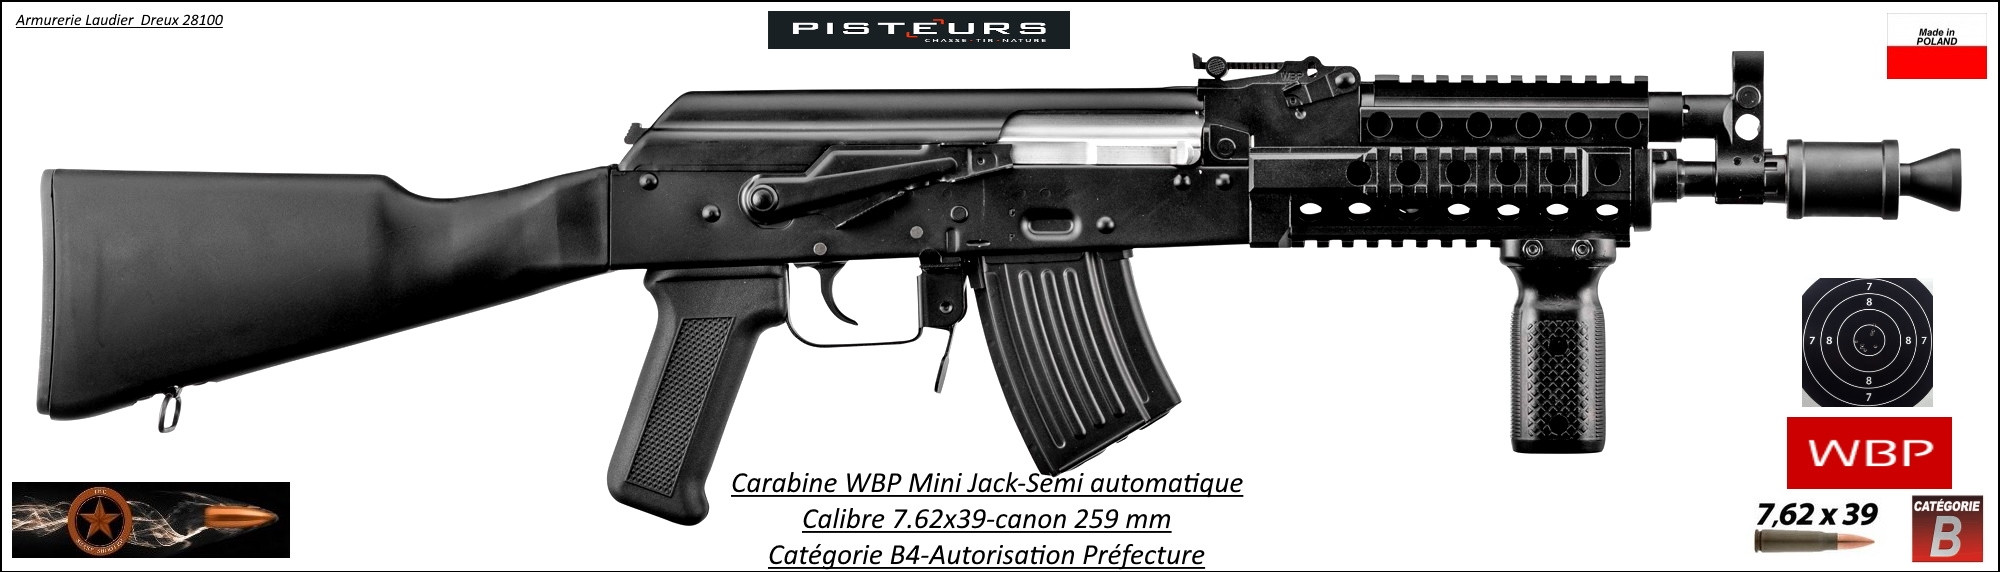 Carabine WBP Mini Jack Calibre 7.62x39 semi-automatique 259 m/m-Autorisation-Préfectorale-B4-Ref  wbp130-ea